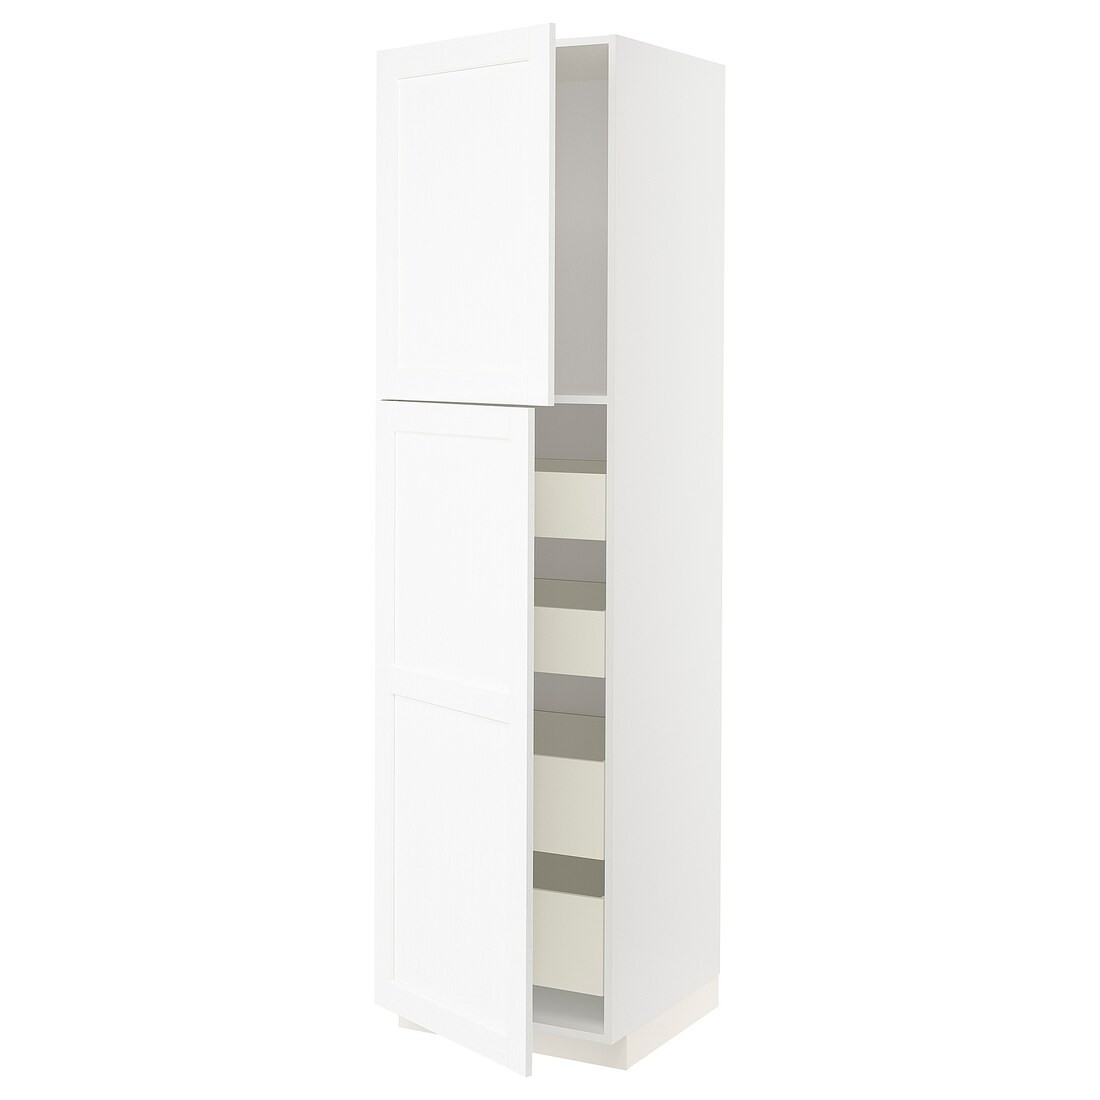 METOD МЕТОД / MAXIMERA МАКСИМЕРА Шкаф высокий 2 двери / 4 ящика, белый Enköping / белый имитация дерева, 60x60x220 см